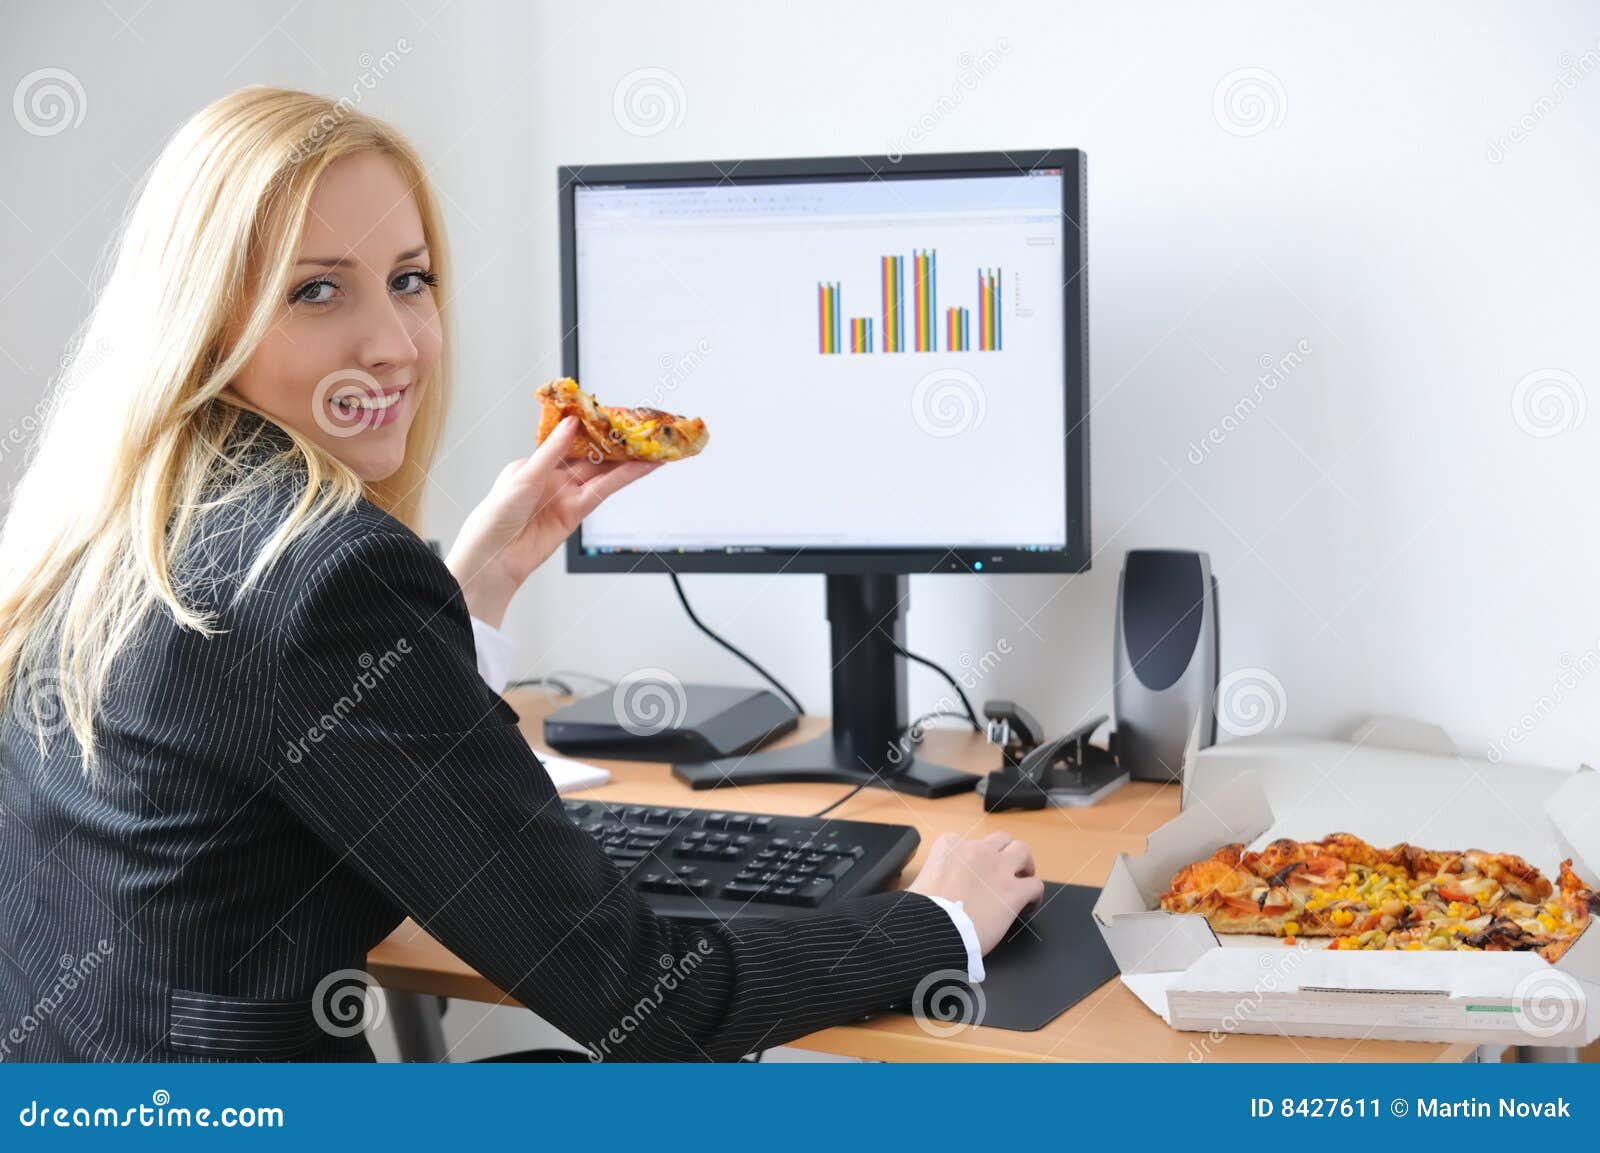 επιχειρησιακός υπολο&gamm. επιχείρηση που τρώει την πίτσα που εγκαθιστά τις νεολαίες εργασίας επιτραπέζιων γυναικών